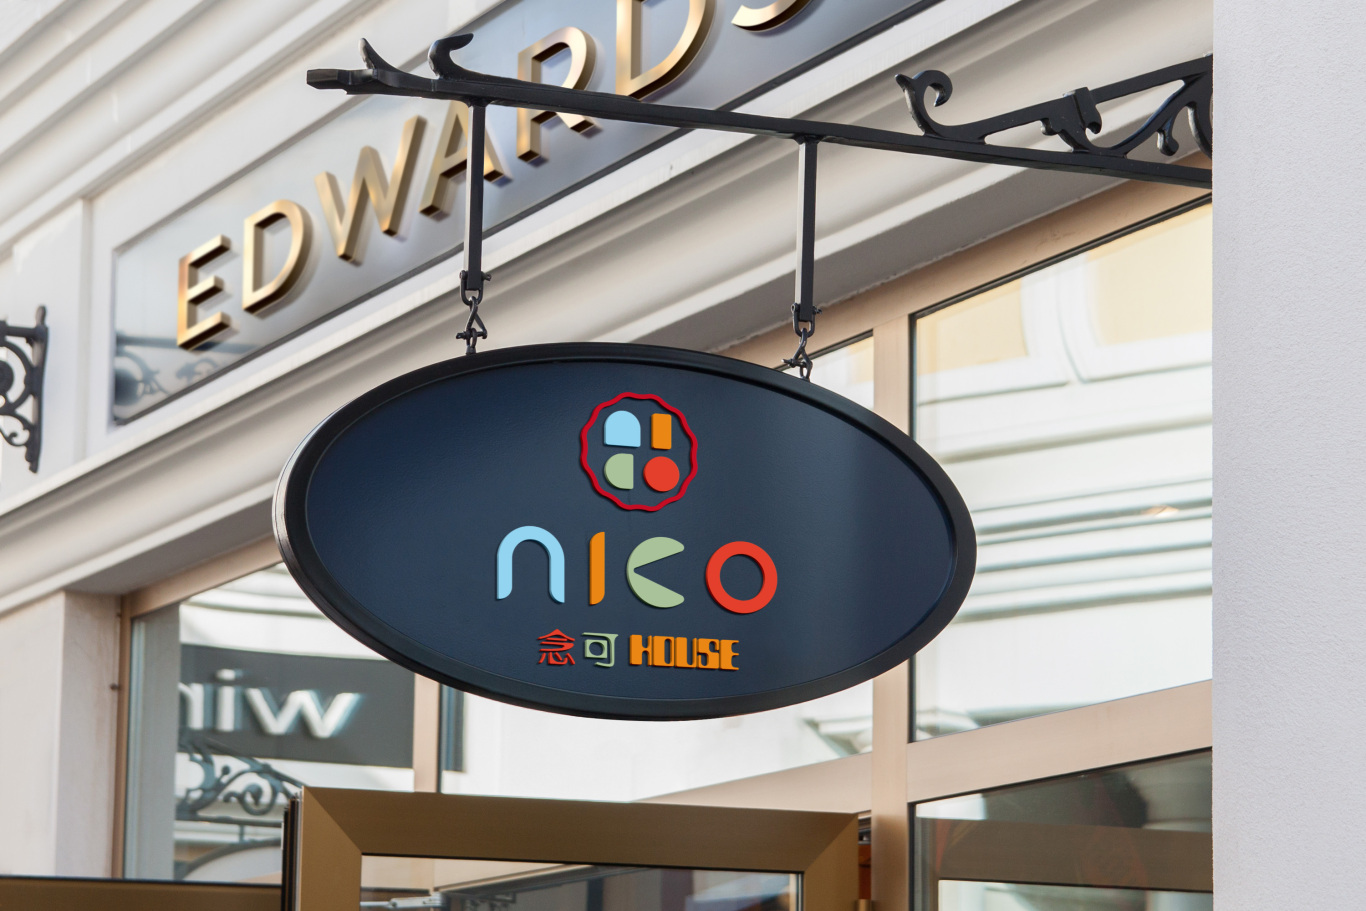 念可 NICO 甜品连锁店LOGO设计图3